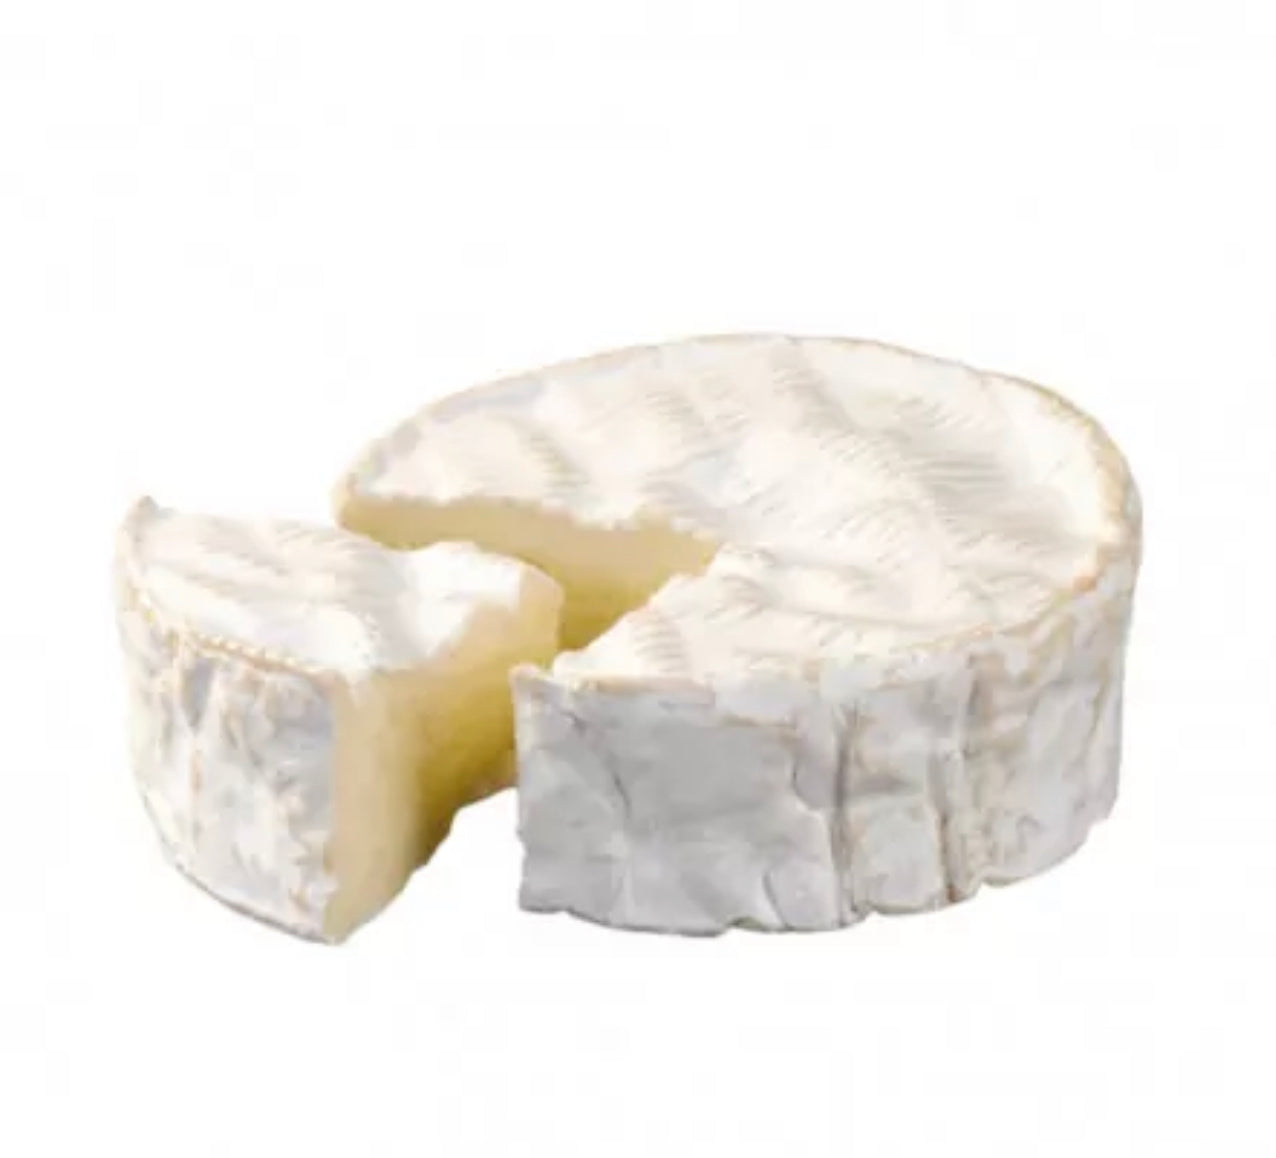 Camembert Le Médaillon unpasteurized creamer - 250g